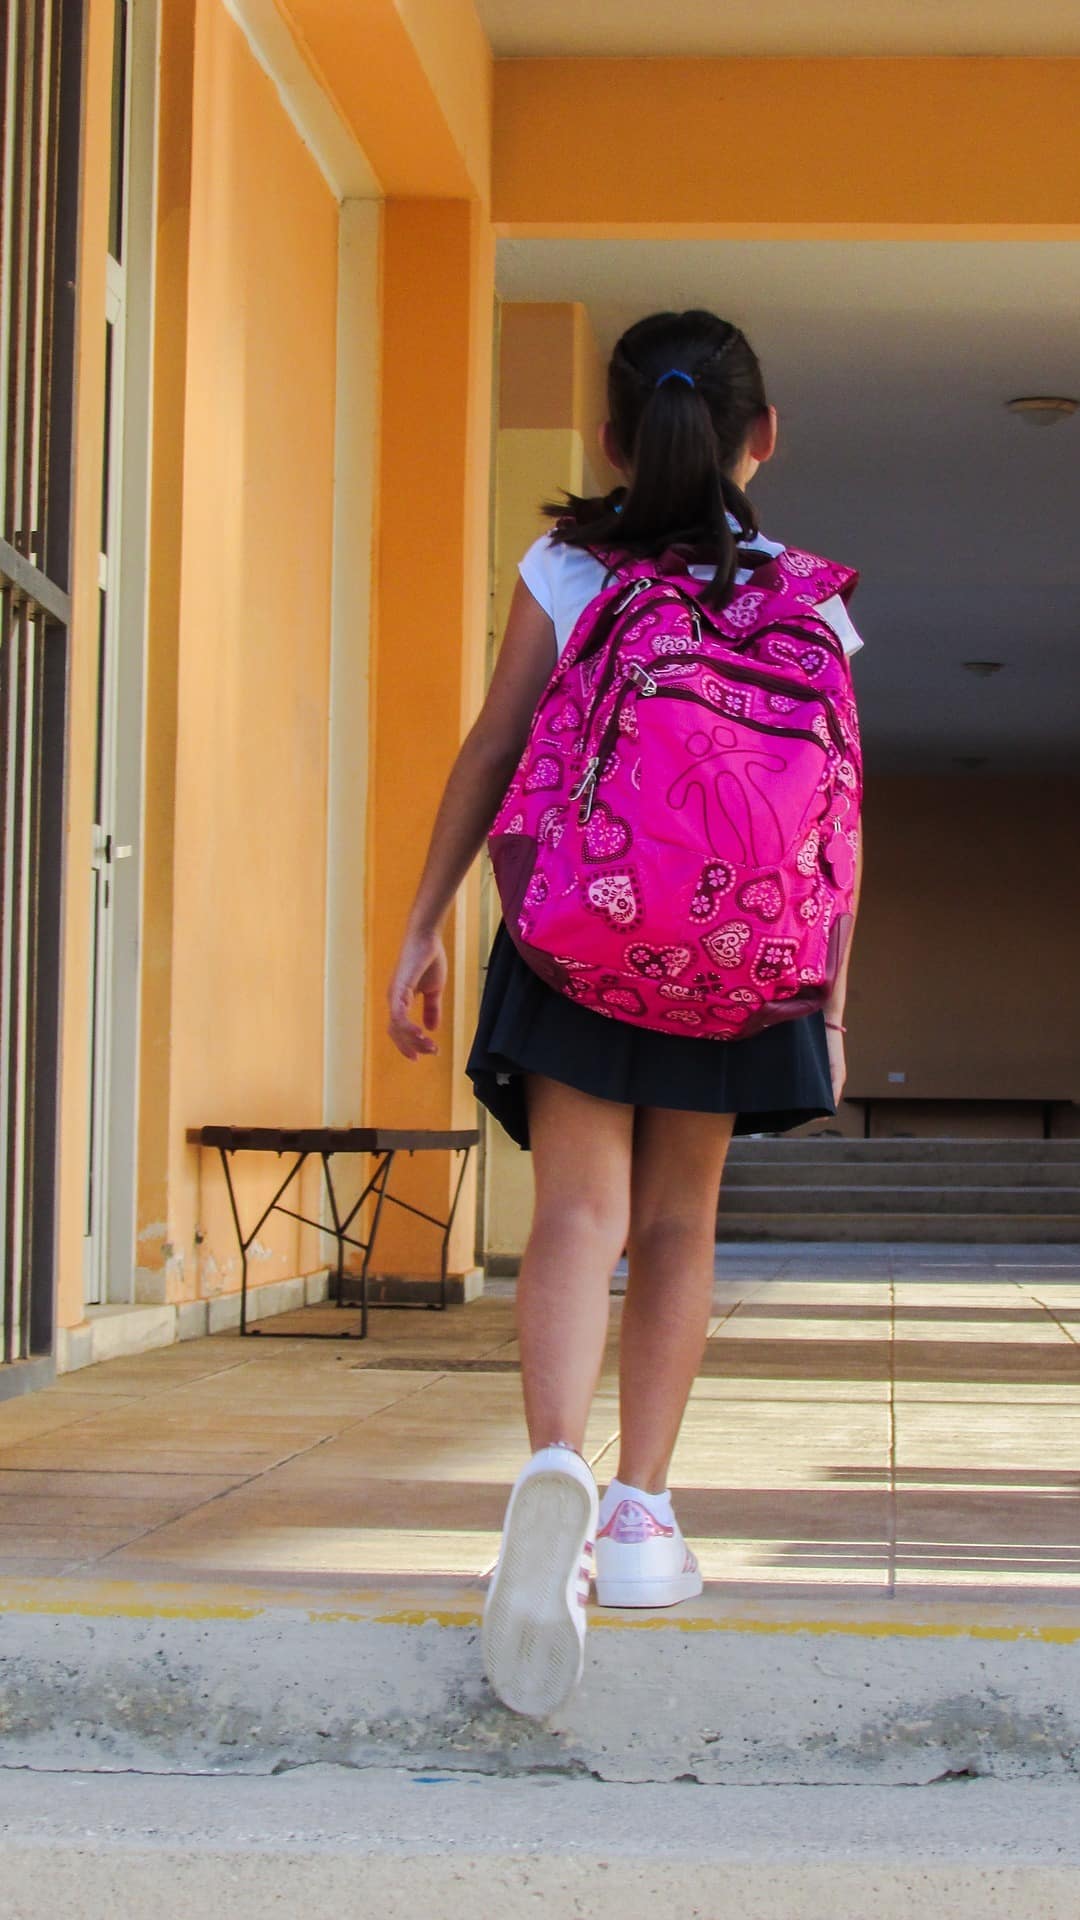 Las mochilas escolares interfieren con la columna vertebral del niño.